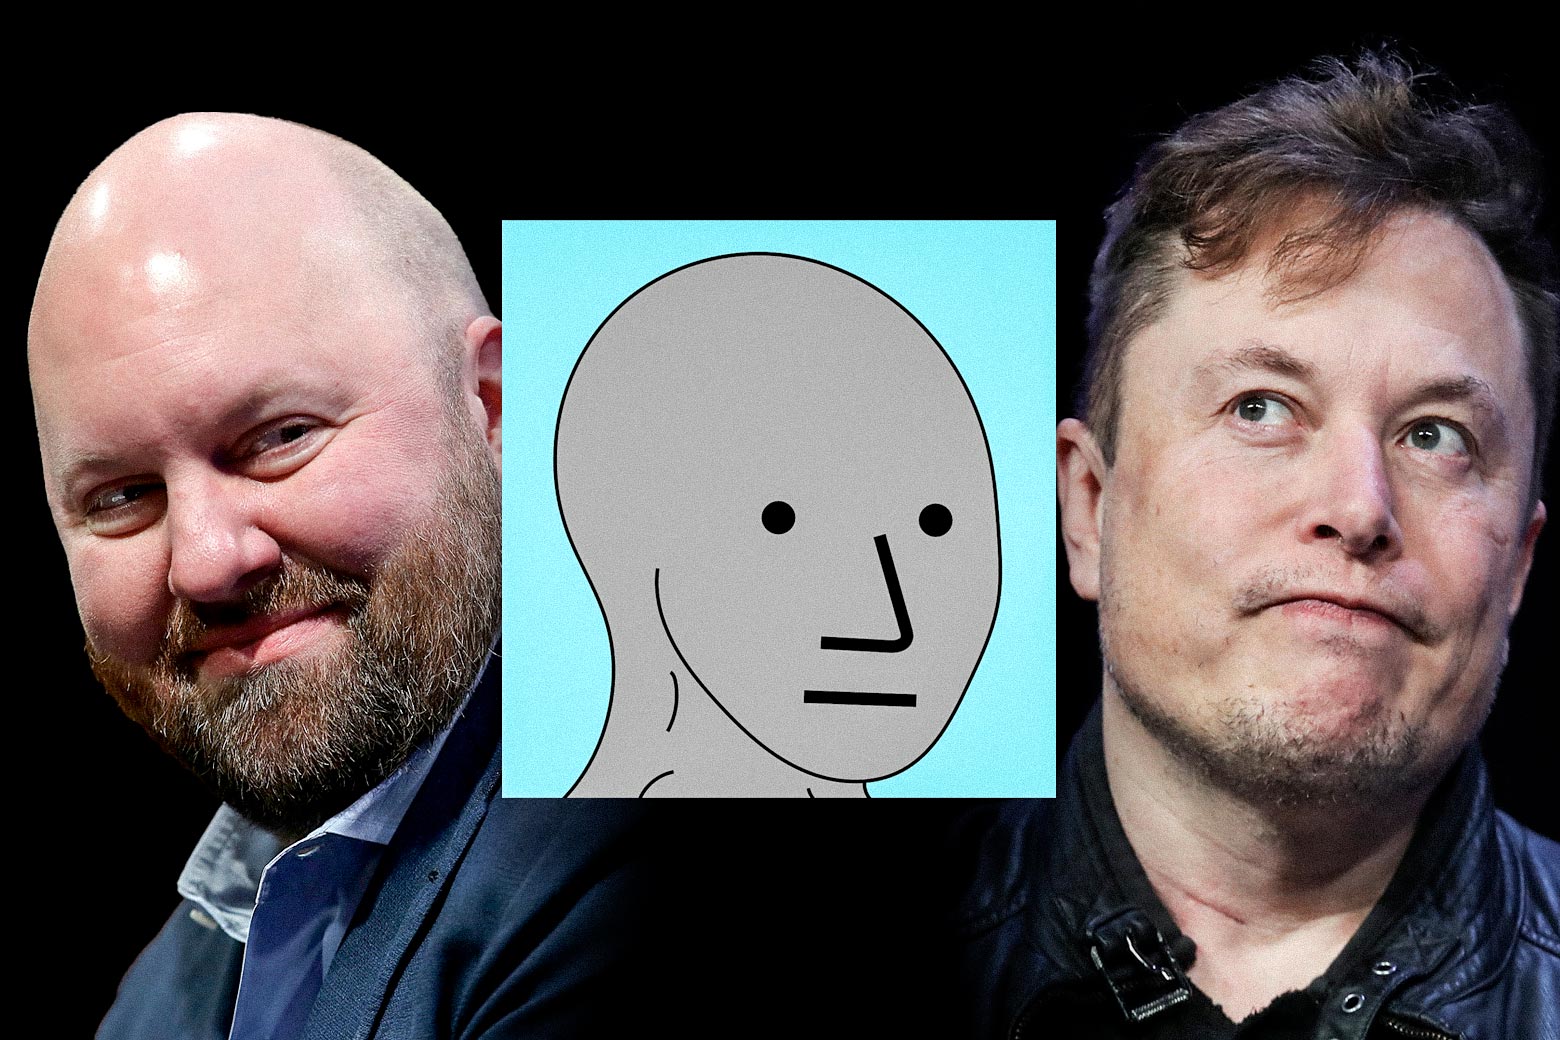 Marc Andreessen, an NPC wojak figure, and Elon Musk.